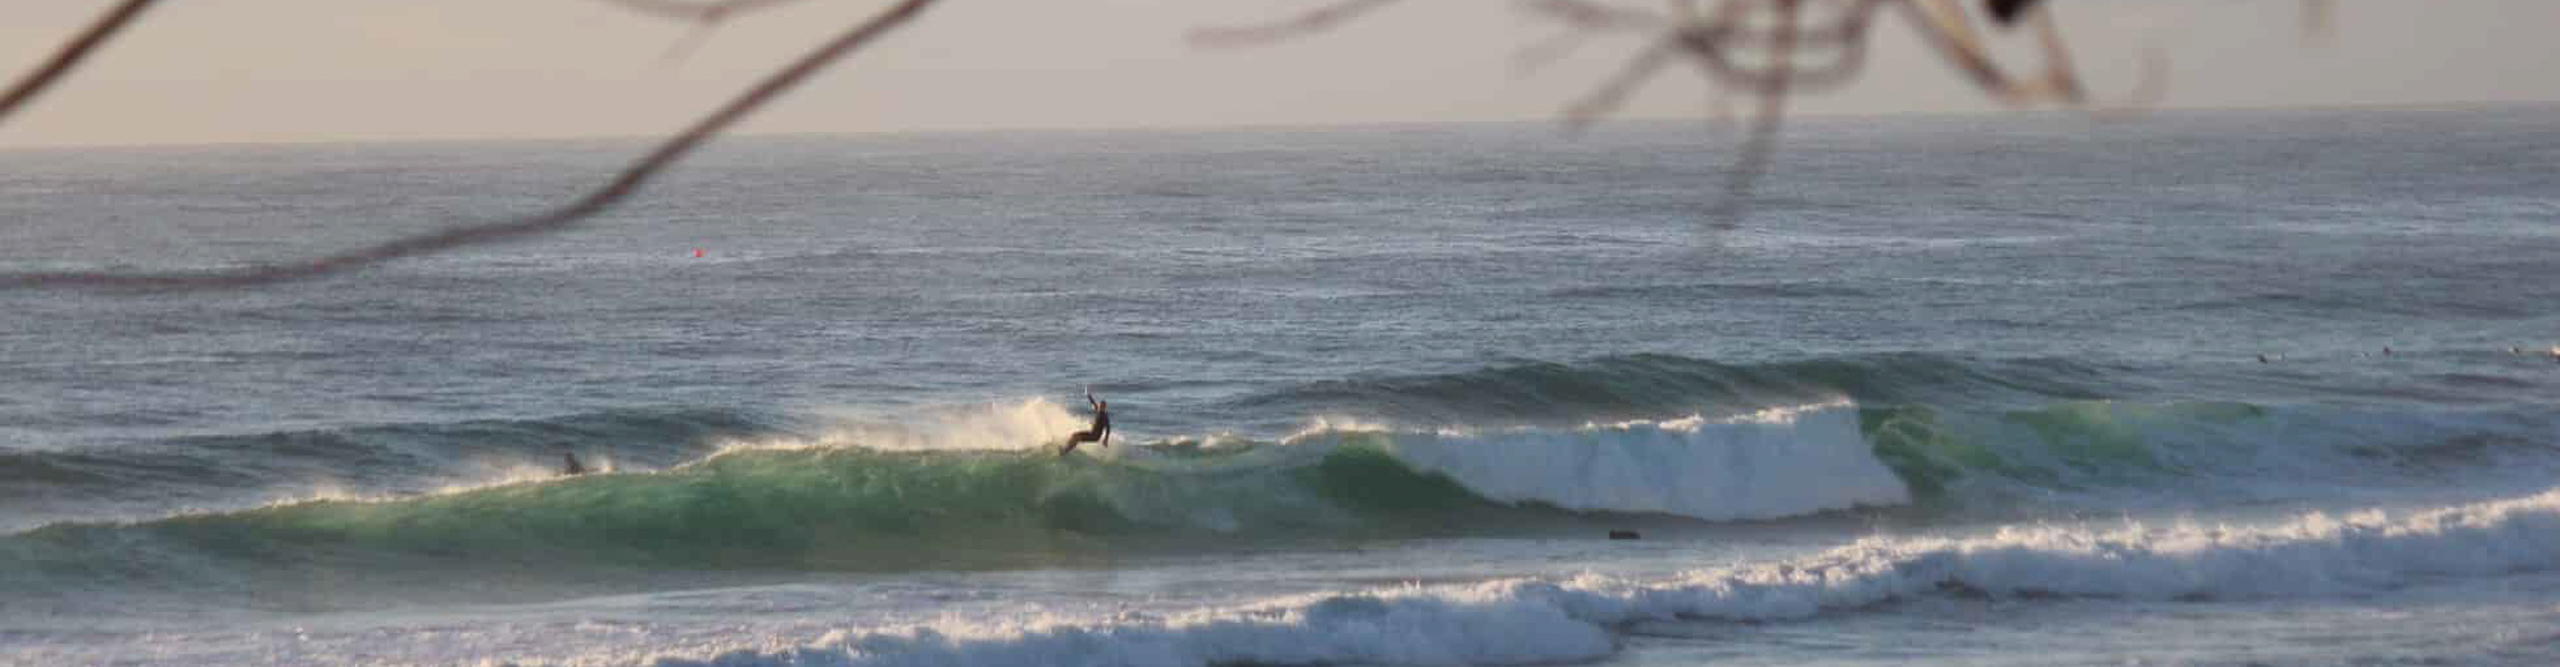 Surfer on a wave in the coast coast, Australia 